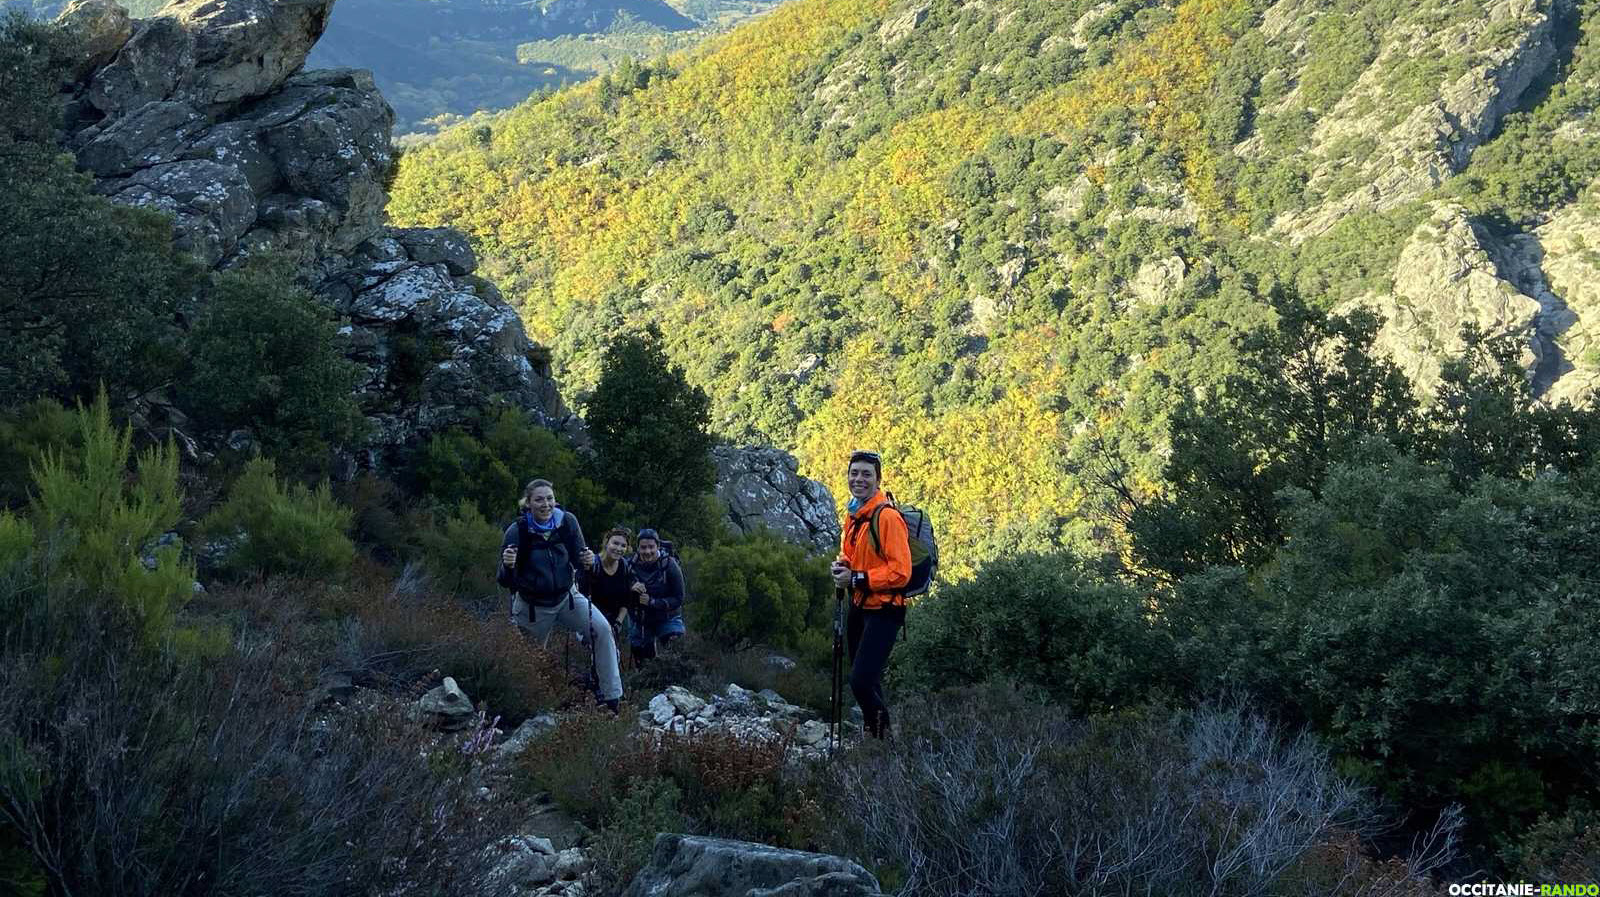 Occitanie-rando - Randonnée pédestre - Trekking - Hérault - Caroux - Piste de la Buffe - Escandorgue - Roqueredonde